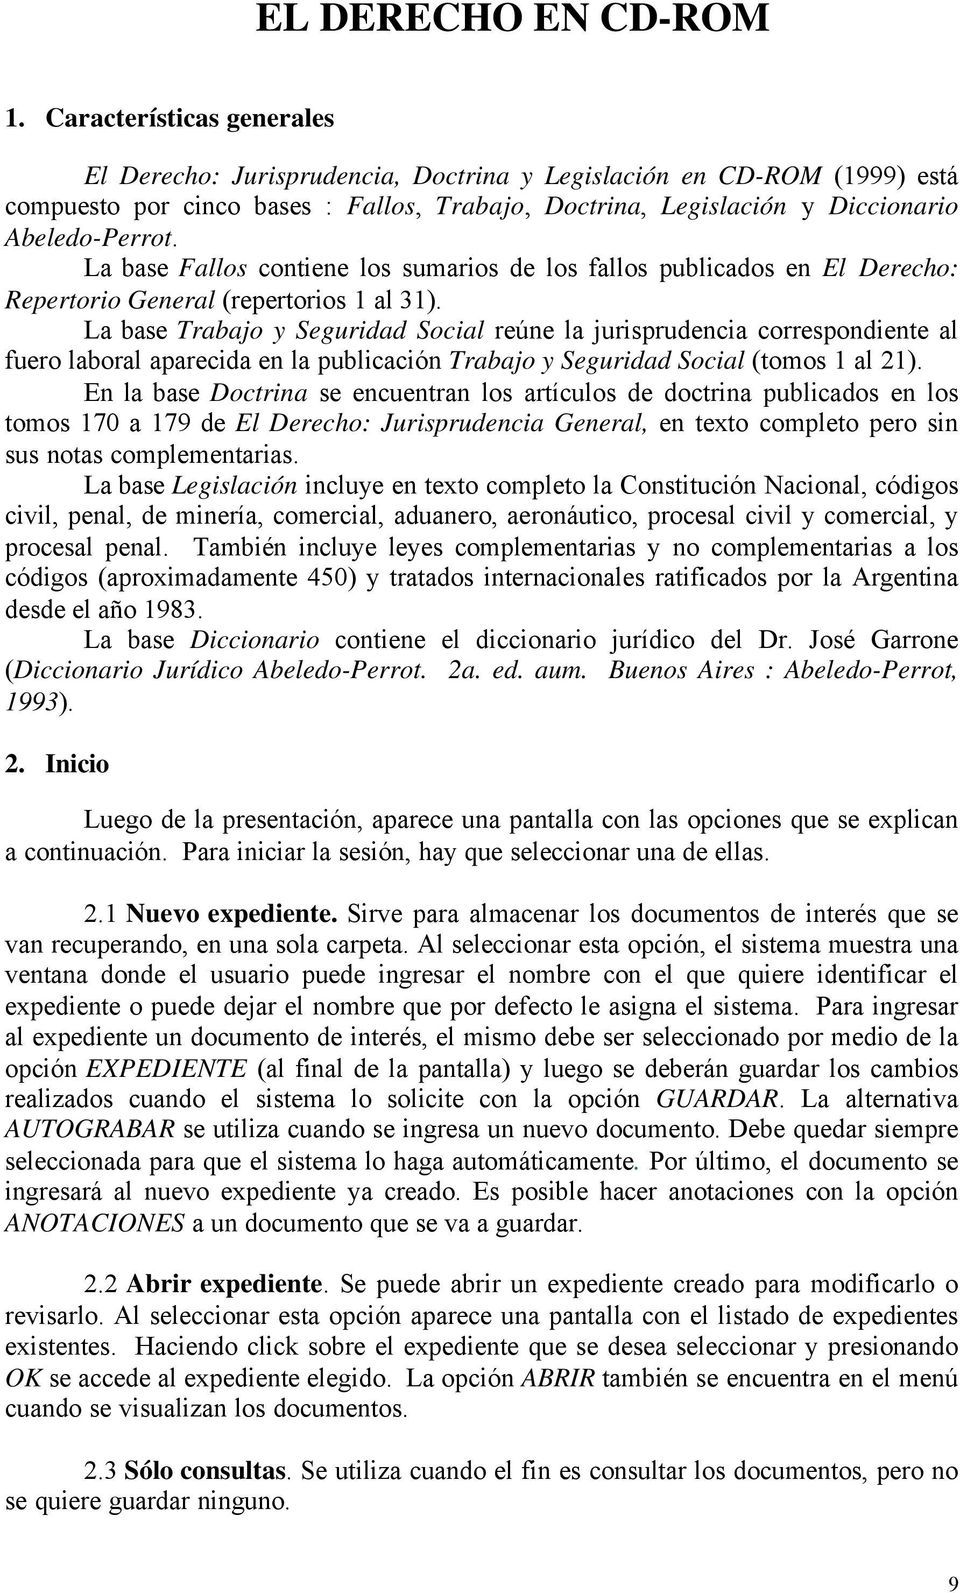 La base Fallos contiene los sumarios de los fallos publicados en El Derecho: Repertorio General (repertorios 1 al 31).